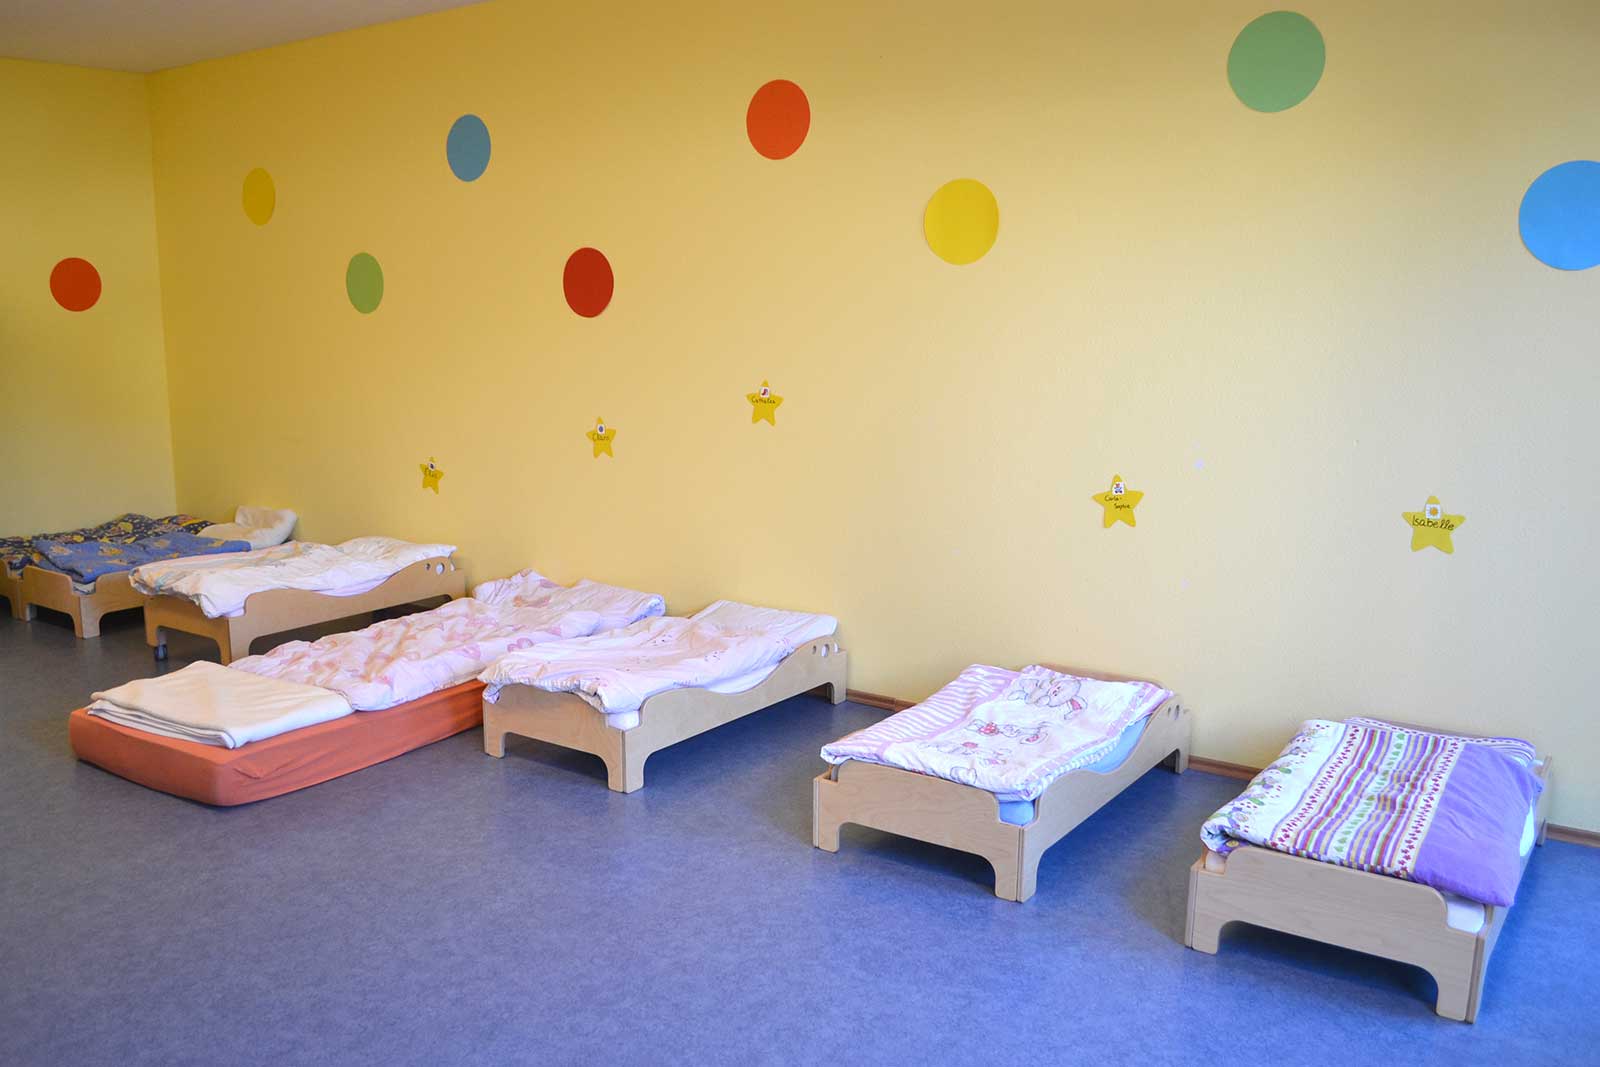 Nach dem Mittagessen wird aus dem Bewegungsraum ein Schlafraum mit einem Bett für jedes einzelne Kind.